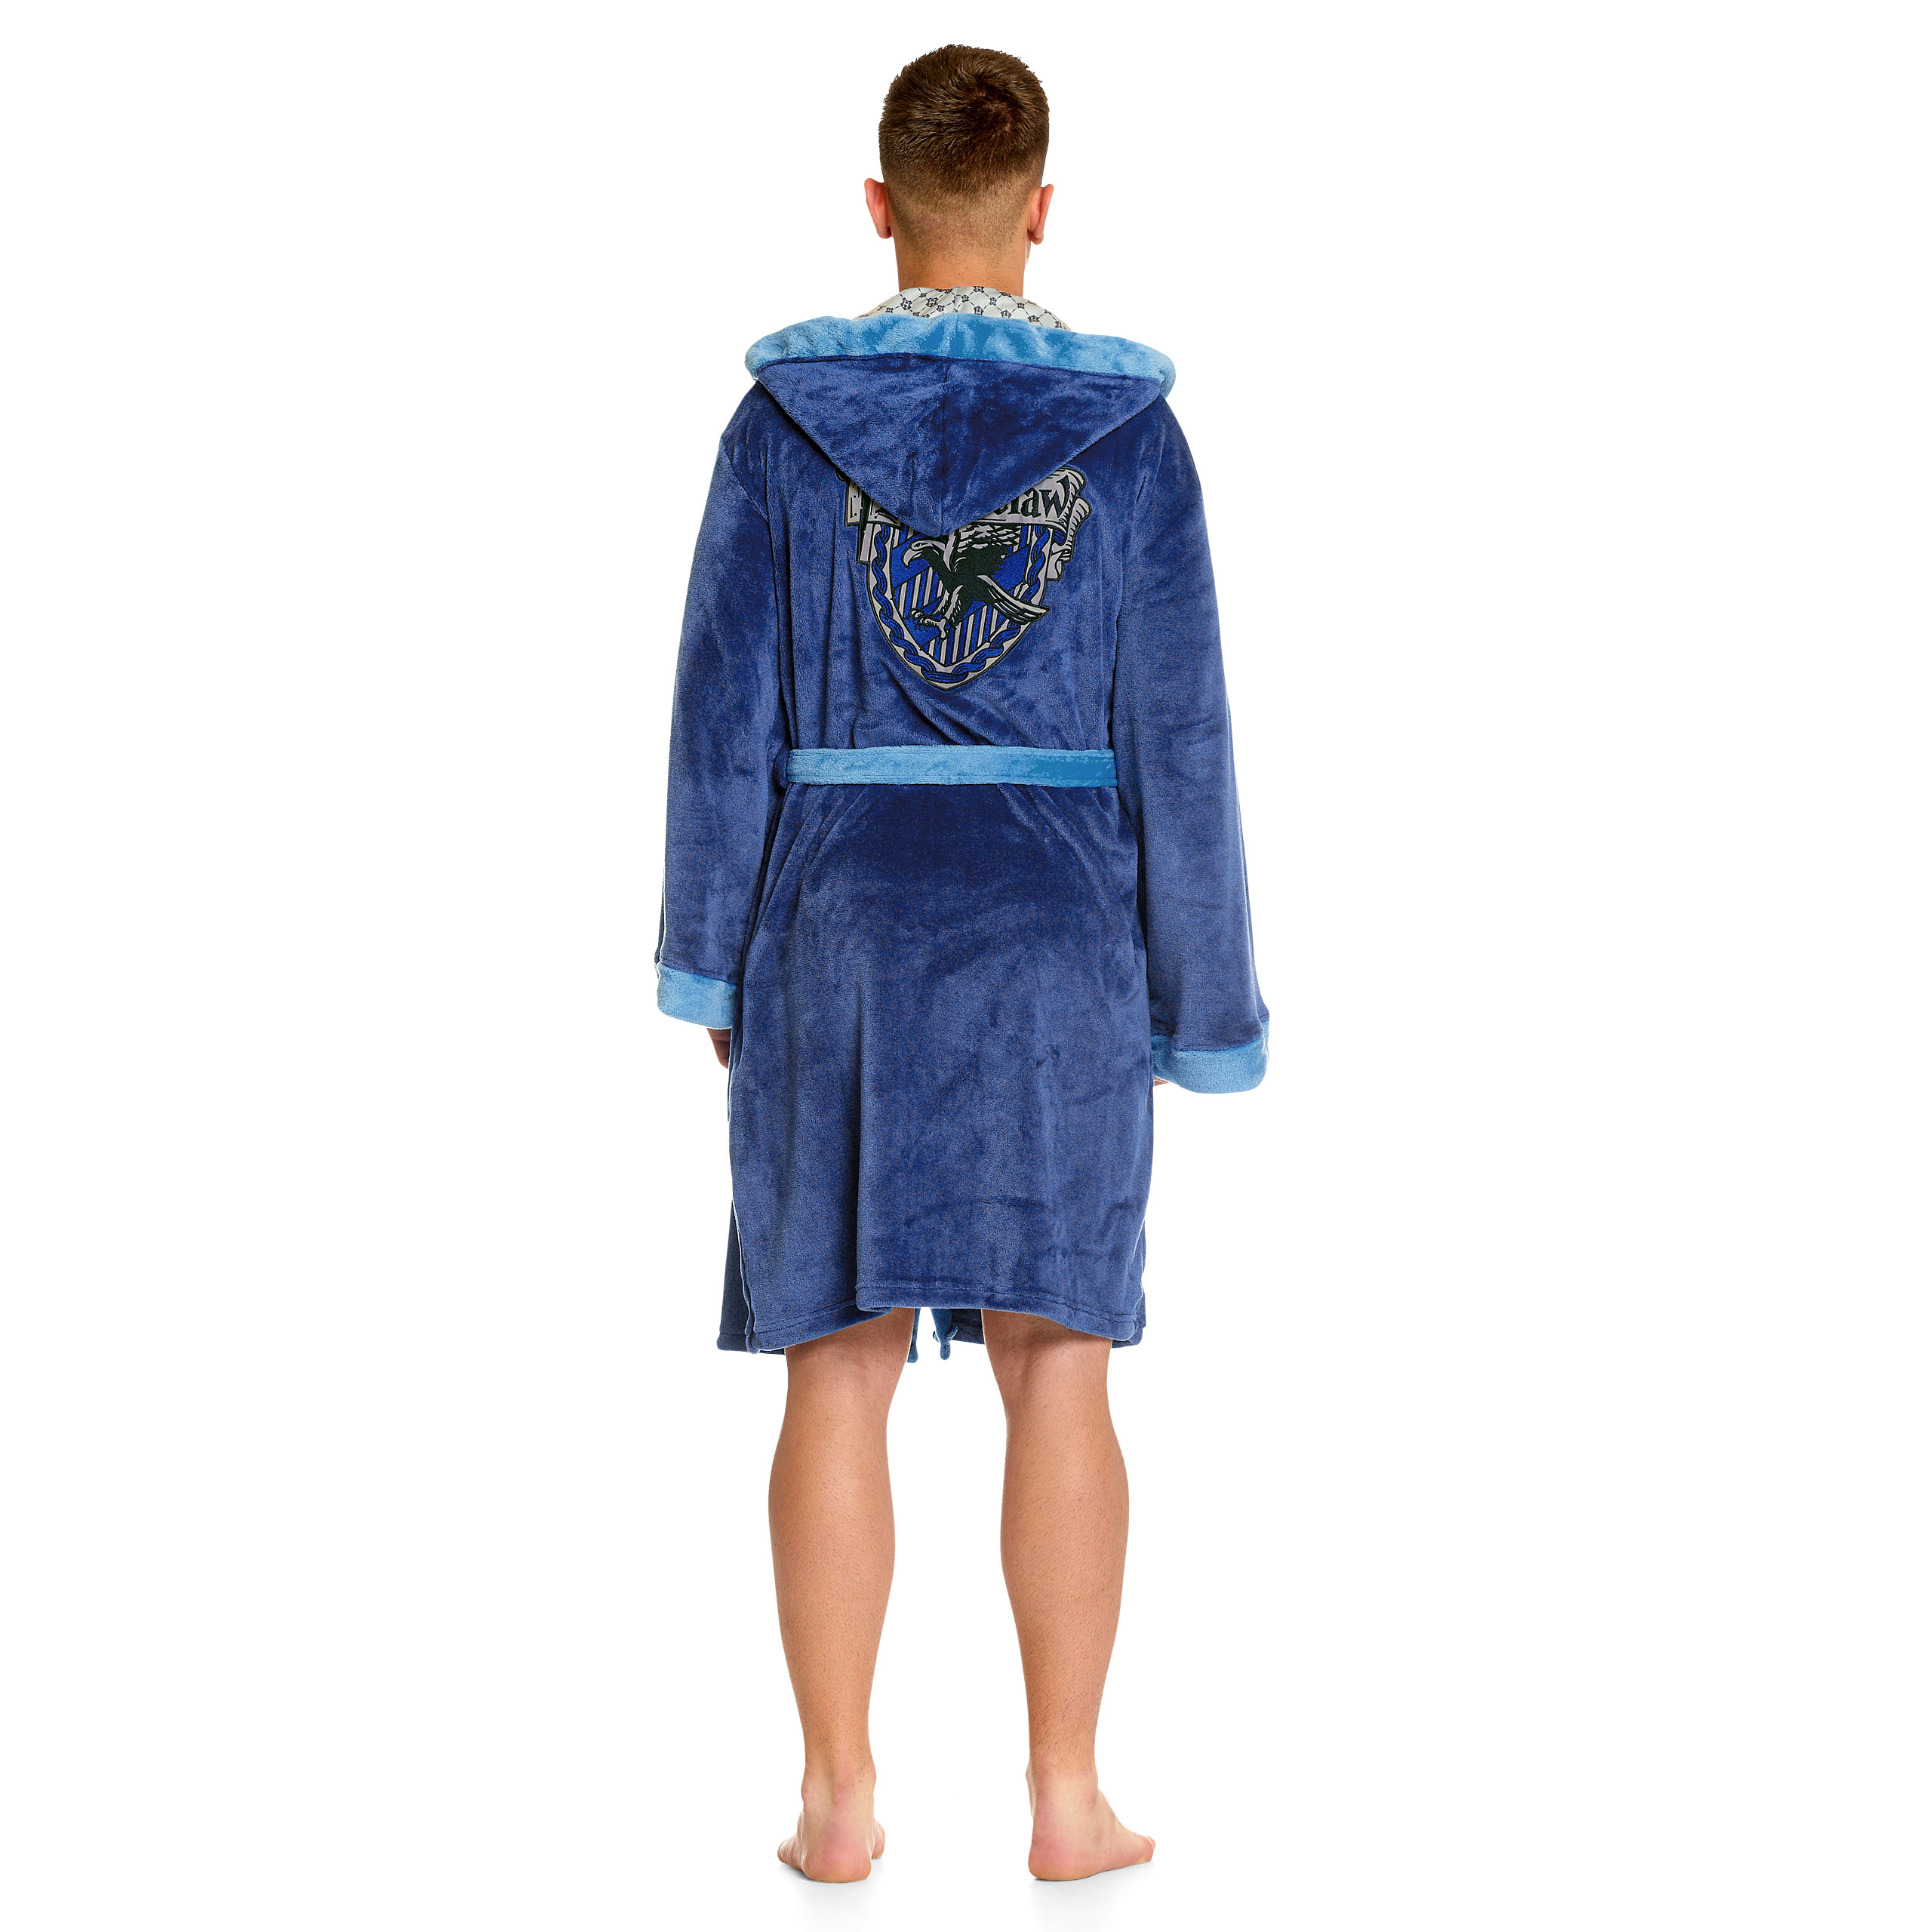 Harry Potter - Ravenclaw Wappen Bademantel blau